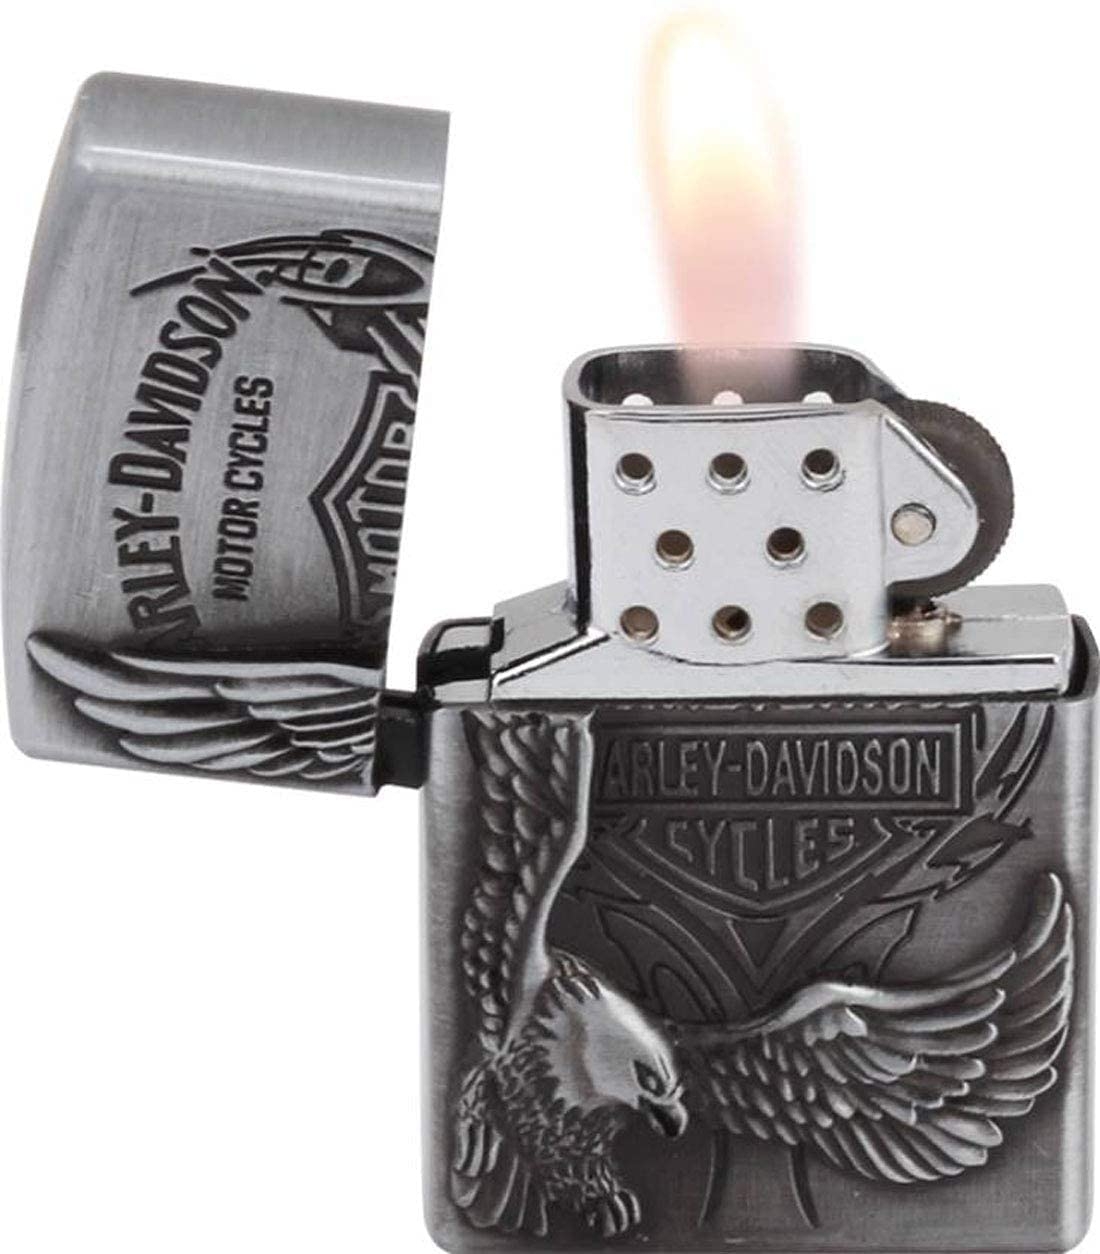 Alkey Egle ciggrette Lighter with Vintage Flip Top | Cigarette Stylish Pocket Lighter | Stainless Steel Lighter (Silver) Cigarette Lighter